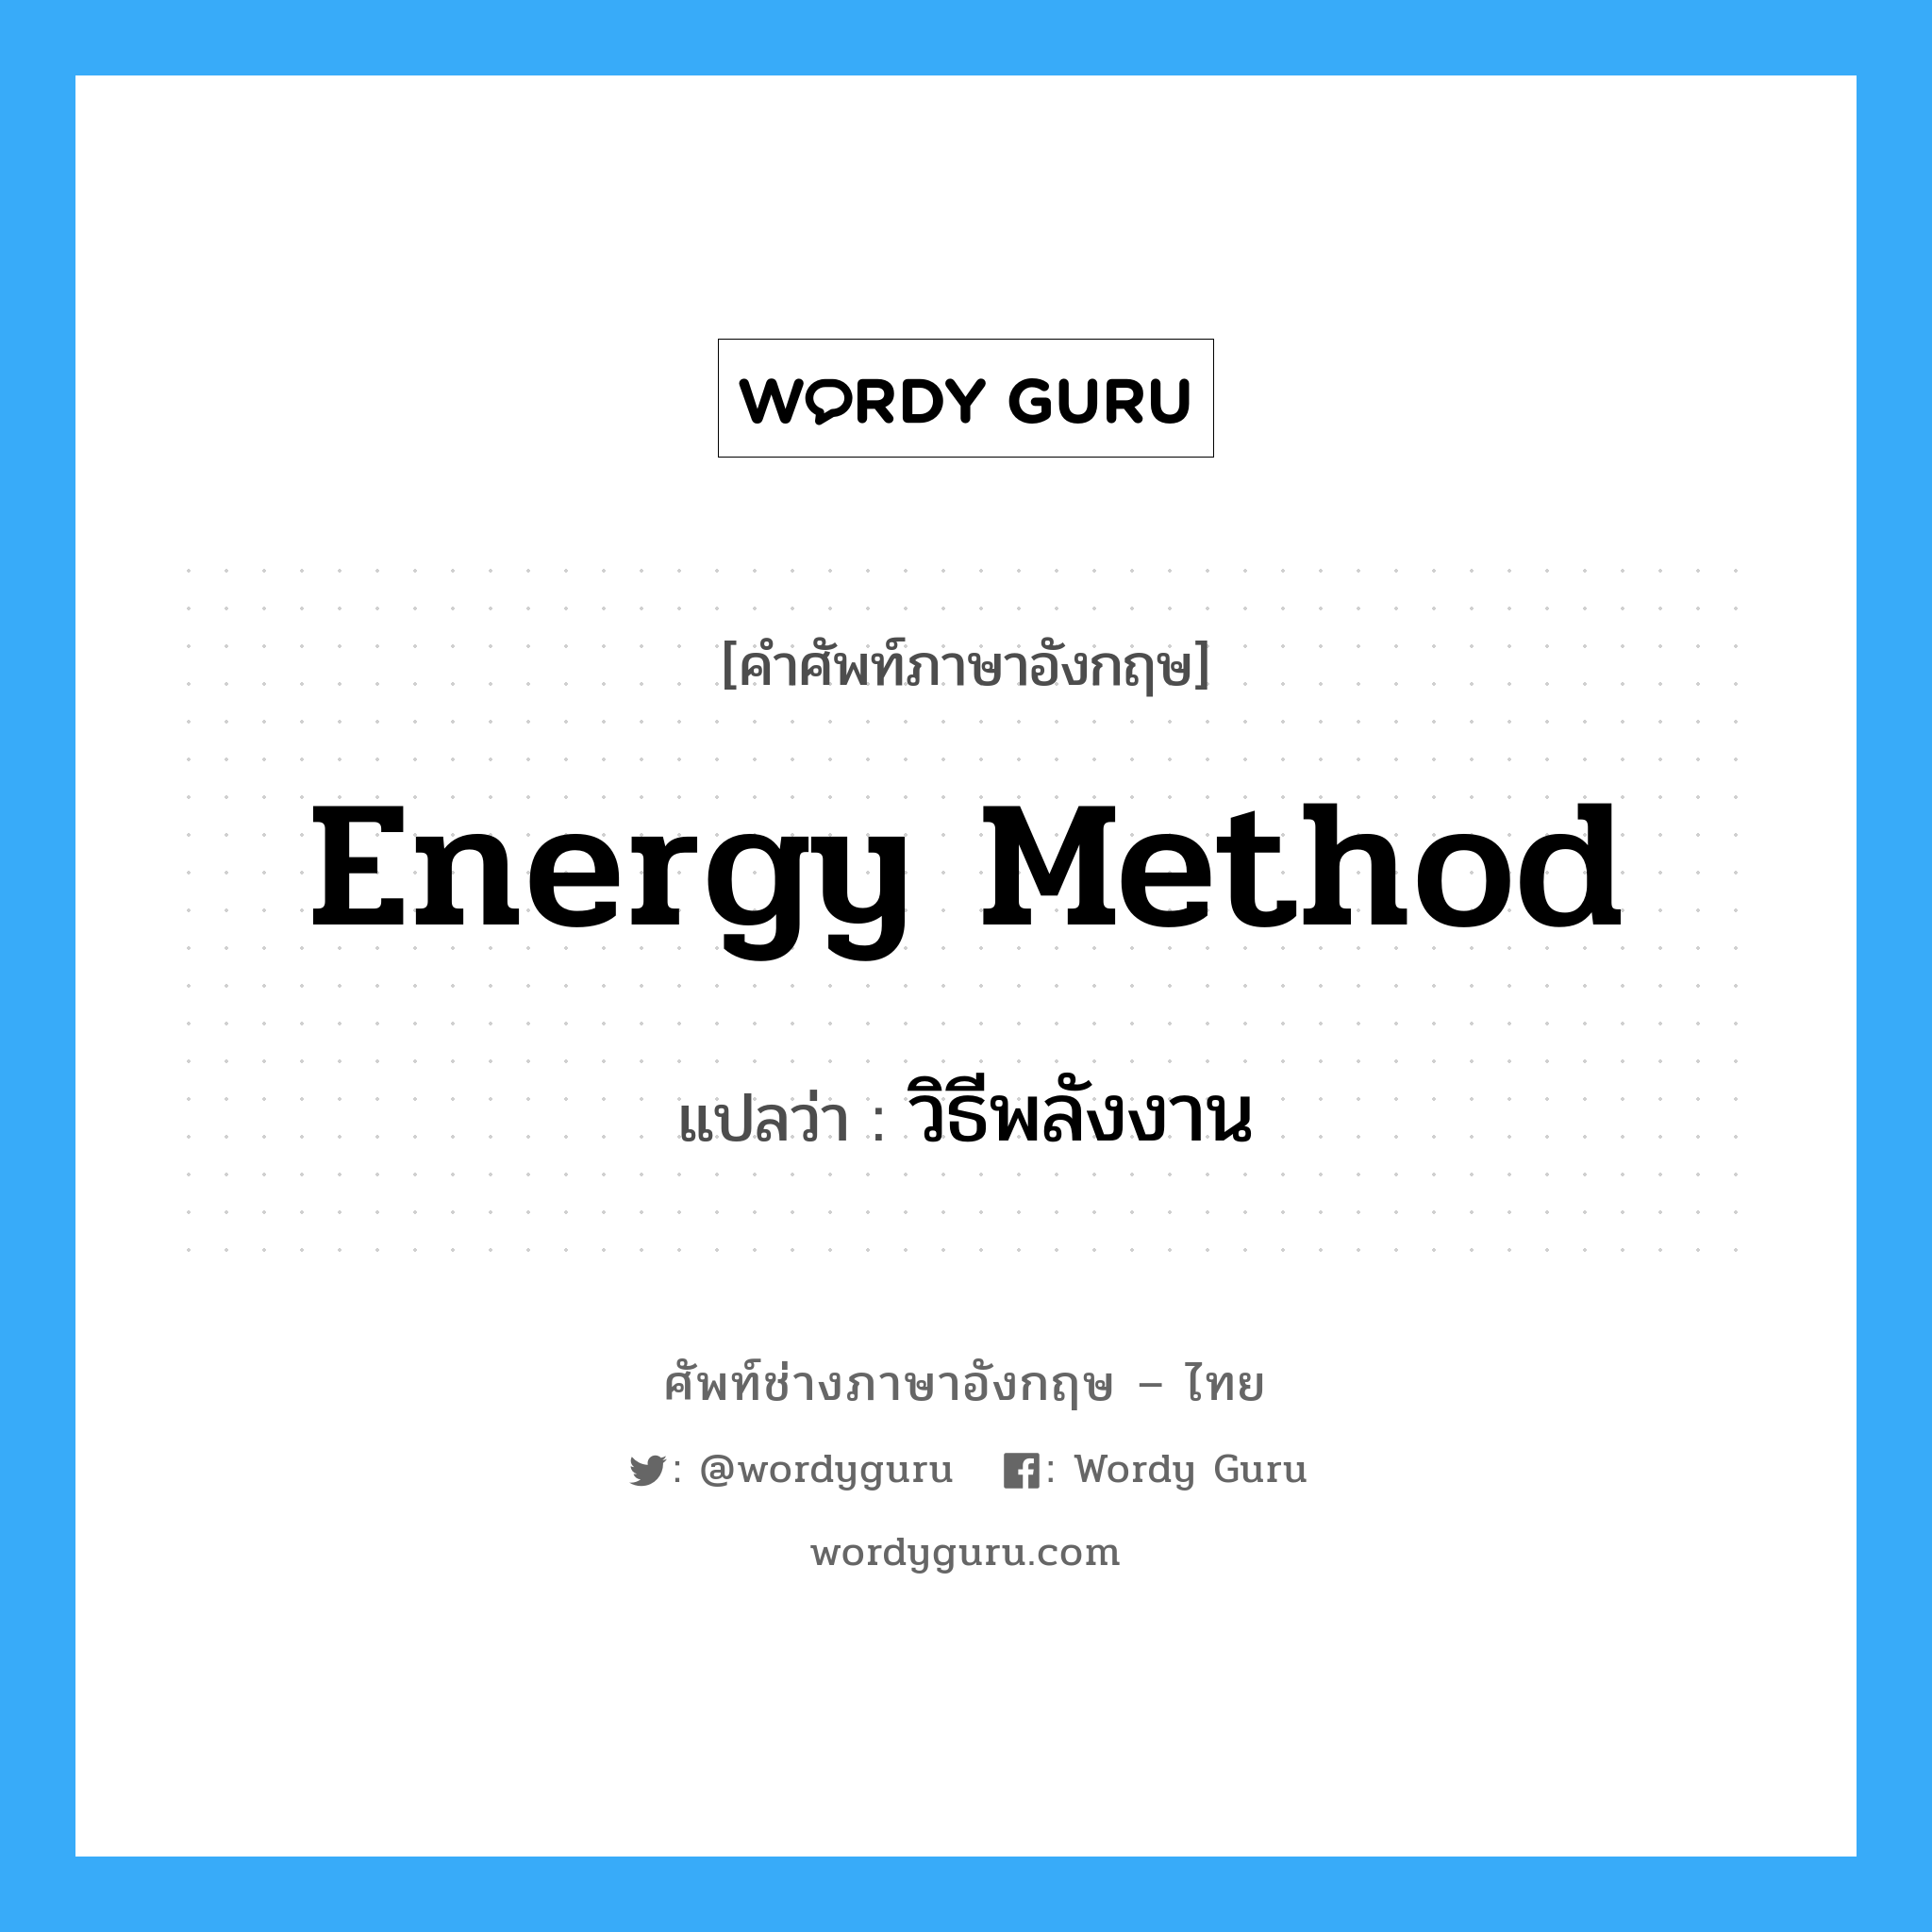 วิธีพลังงาน ภาษาอังกฤษ?, คำศัพท์ช่างภาษาอังกฤษ - ไทย วิธีพลังงาน คำศัพท์ภาษาอังกฤษ วิธีพลังงาน แปลว่า Energy Method